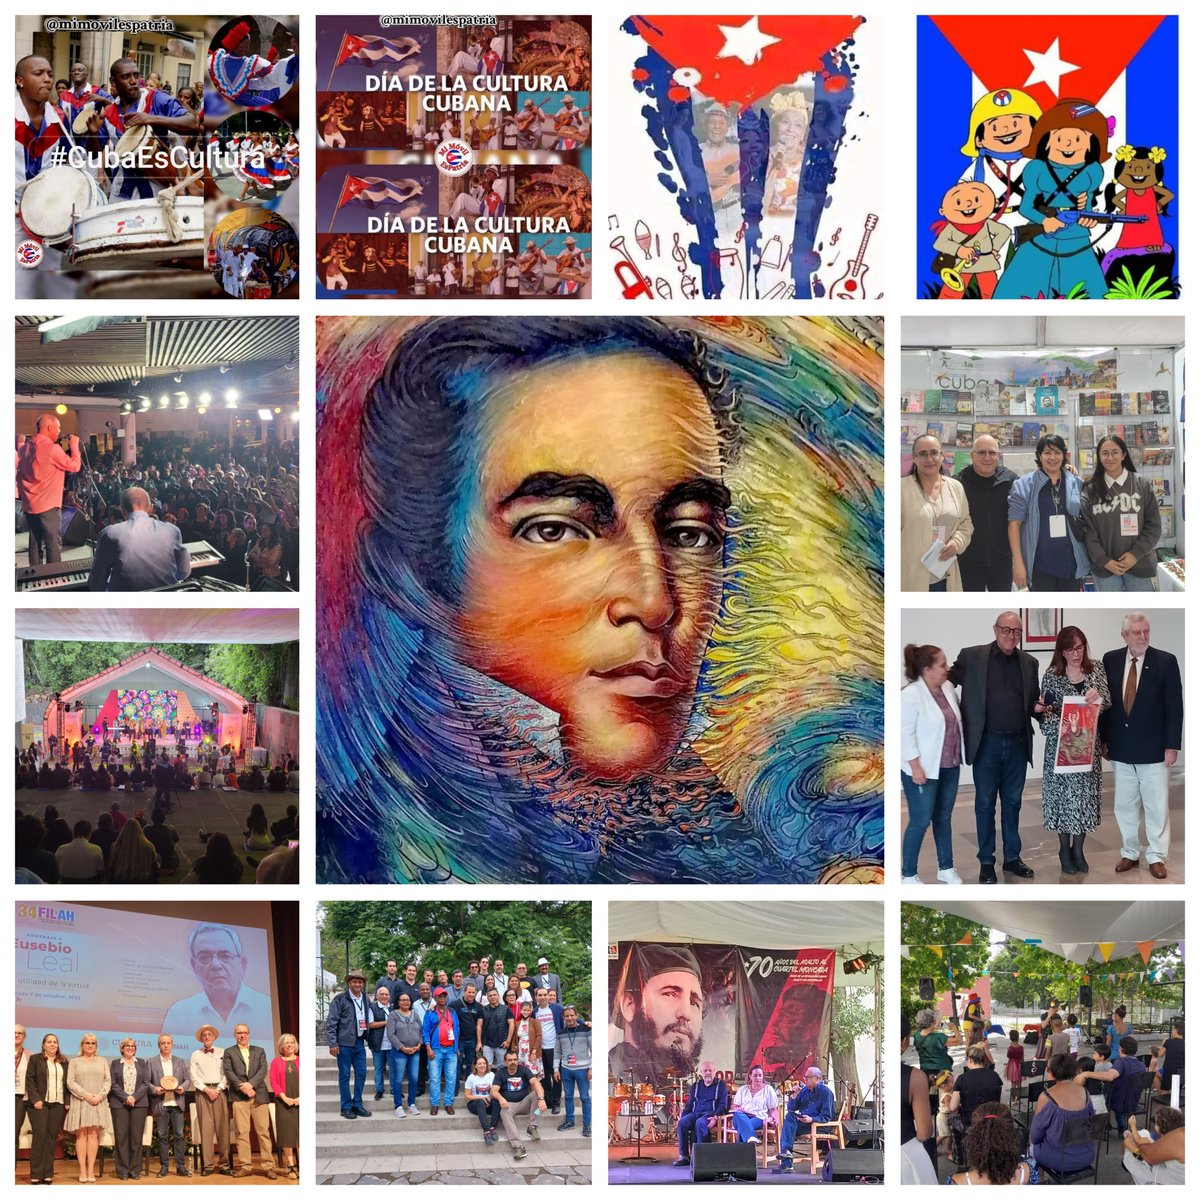 Continuaremos trabajando ' por engrandecer a nuestra cultura. Cultura es Patria'. 
La cultura salva y no se detiene, porque #CubaEsCultura #MásArteYMásCultura
#SomosArtexCuba
#CubaVaConTodos
#LaCulturaNosUne
#JornadaCulturaCubana
#PrelasaElArteEnTusManos